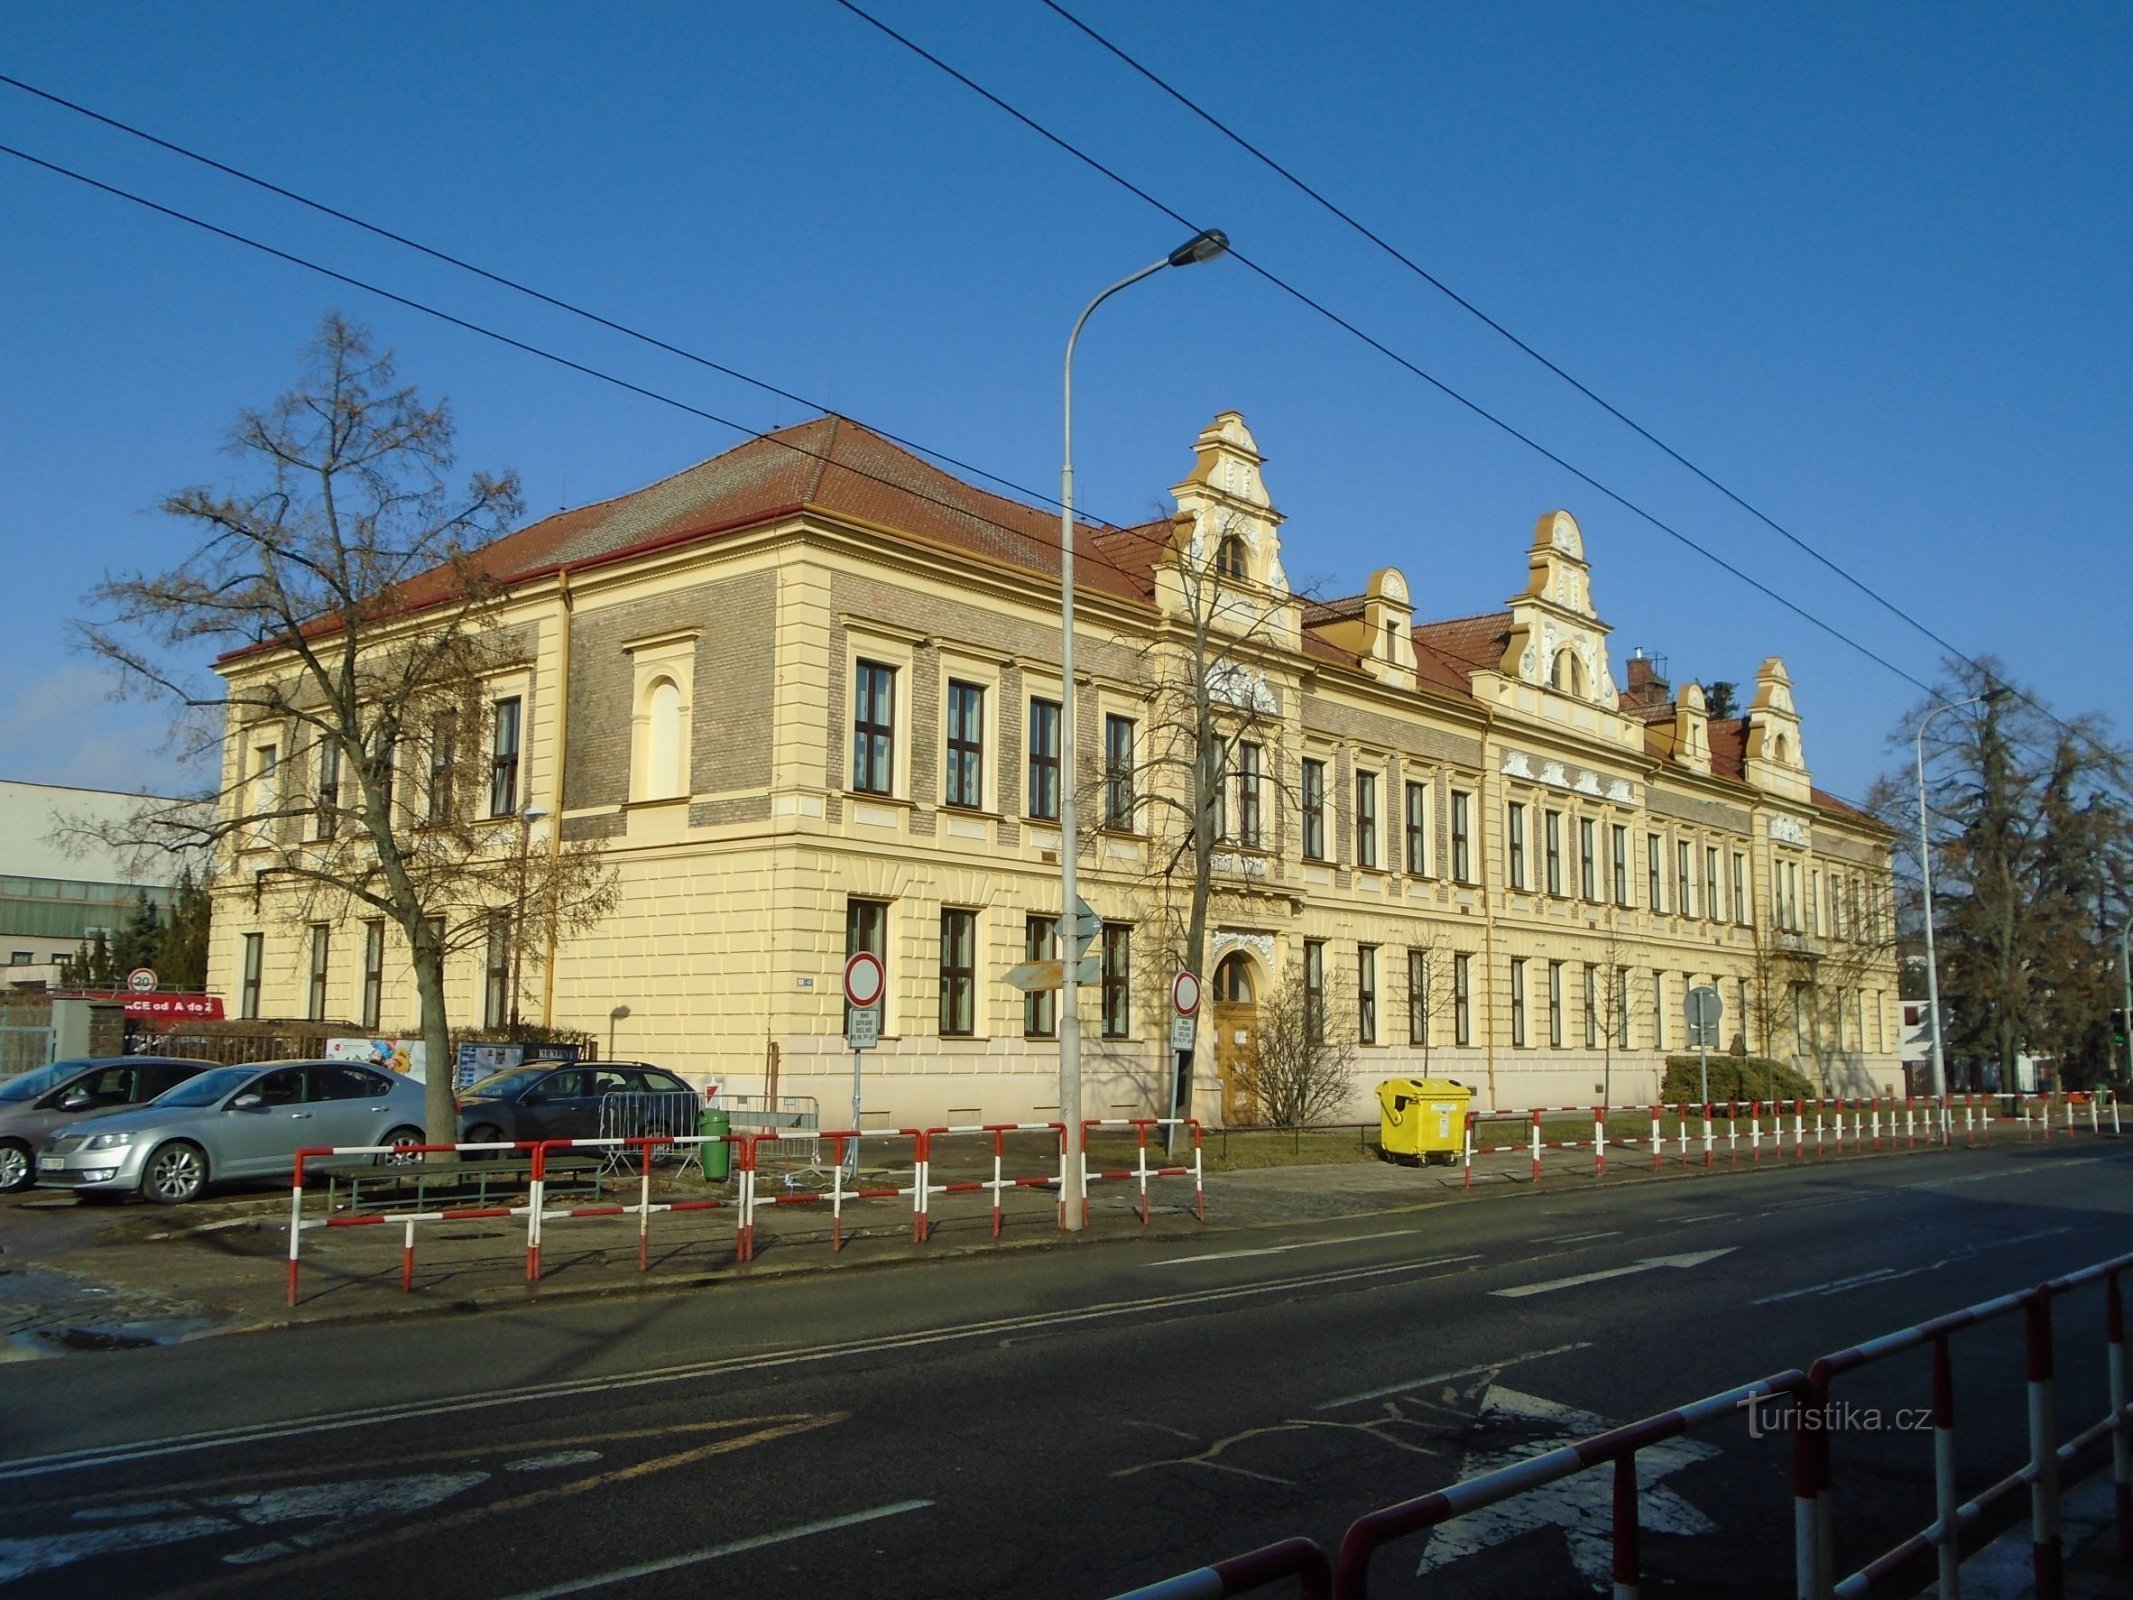 Aspetto attuale della scuola generale di Kukleny (Hradec Králové, 8.2.2019 febbraio XNUMX)